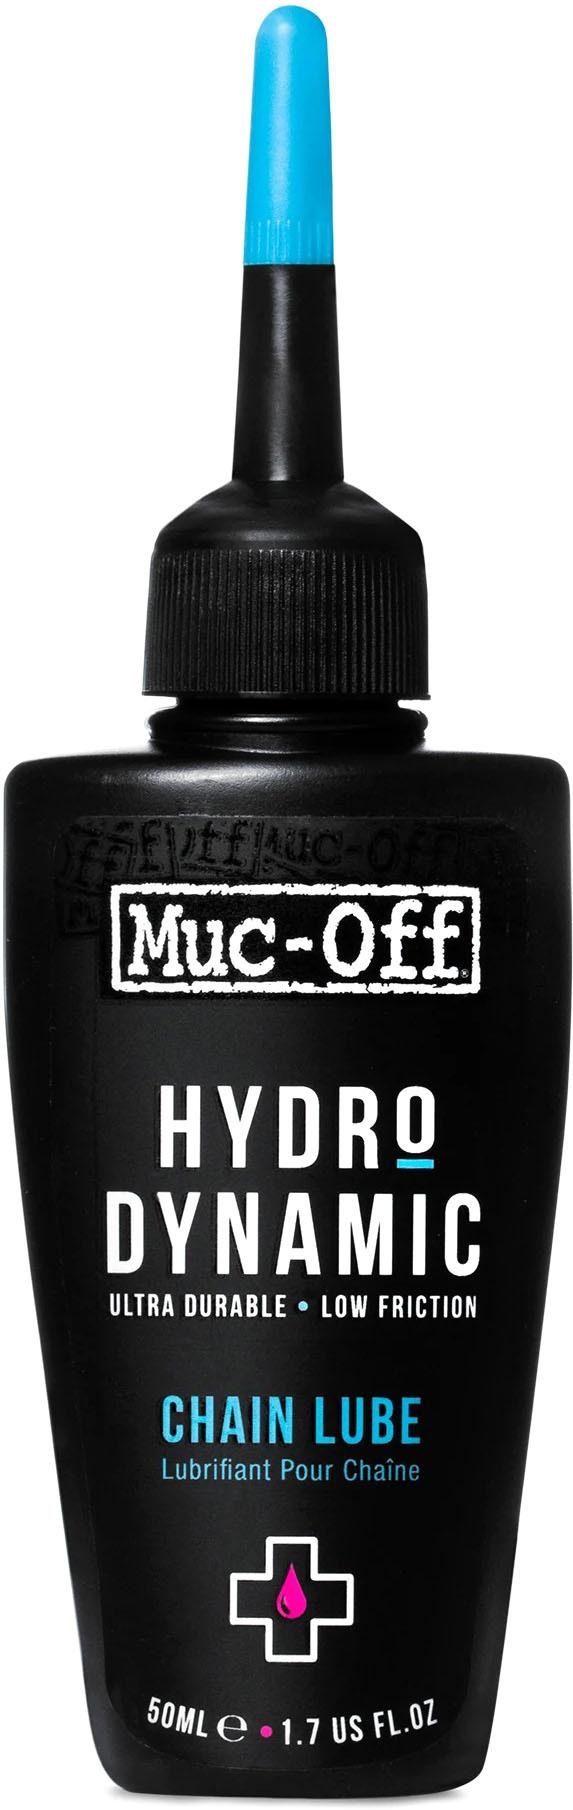 Muc-off Hydrodynamic Chain Lube - Black/blue